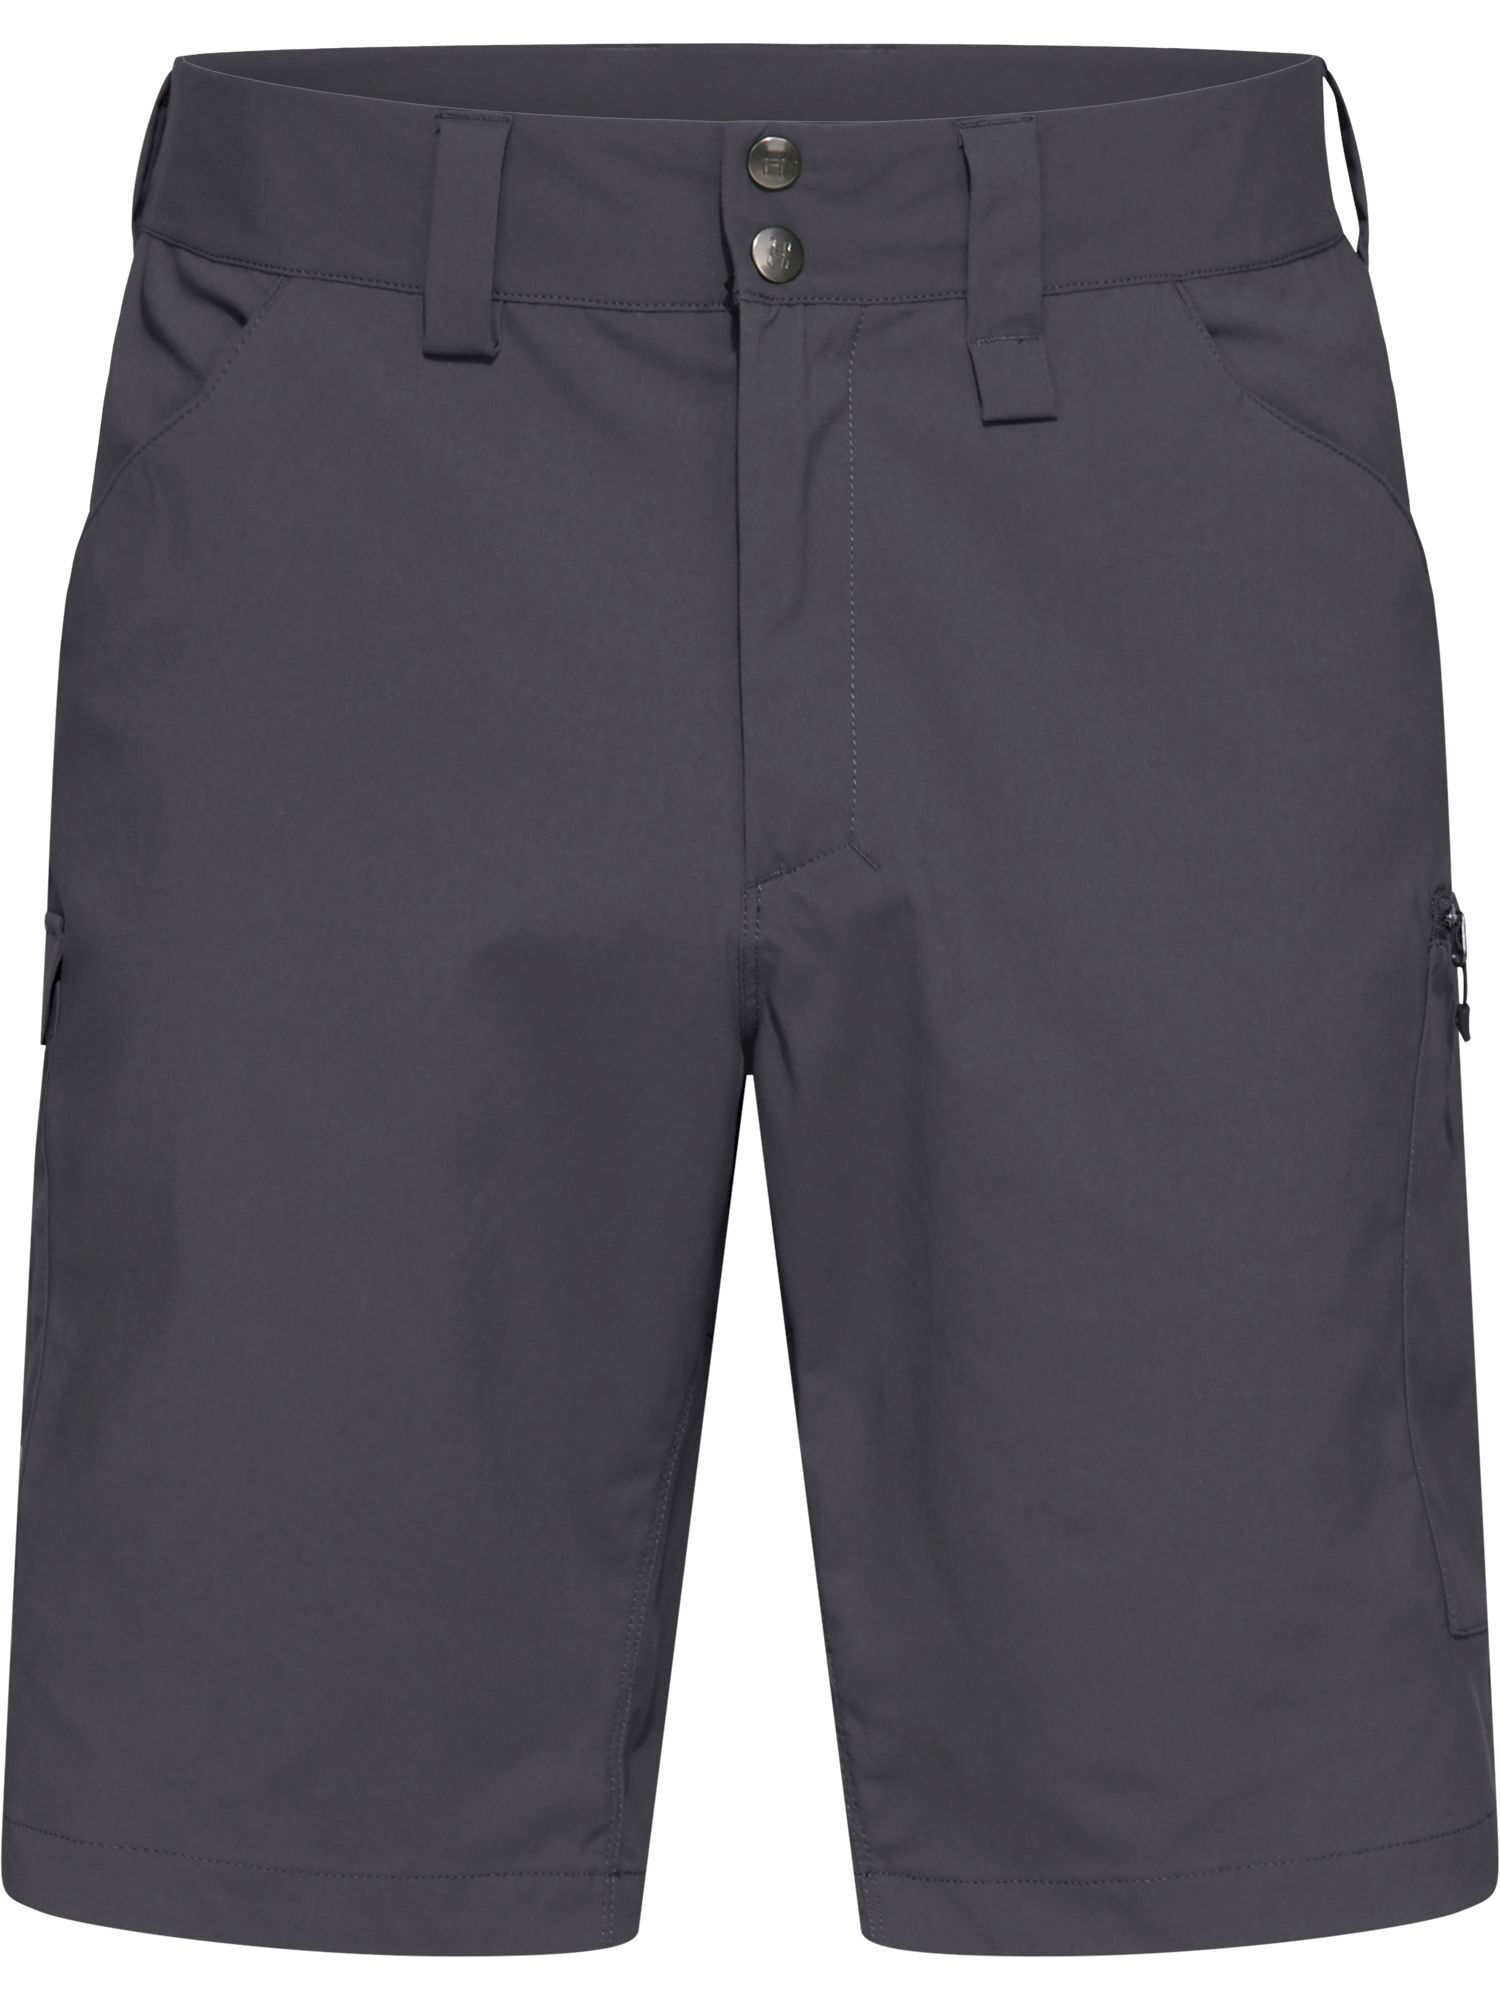 Haglöfs Mid Standard Shorts - Walking shorts - Men's | Hardloop